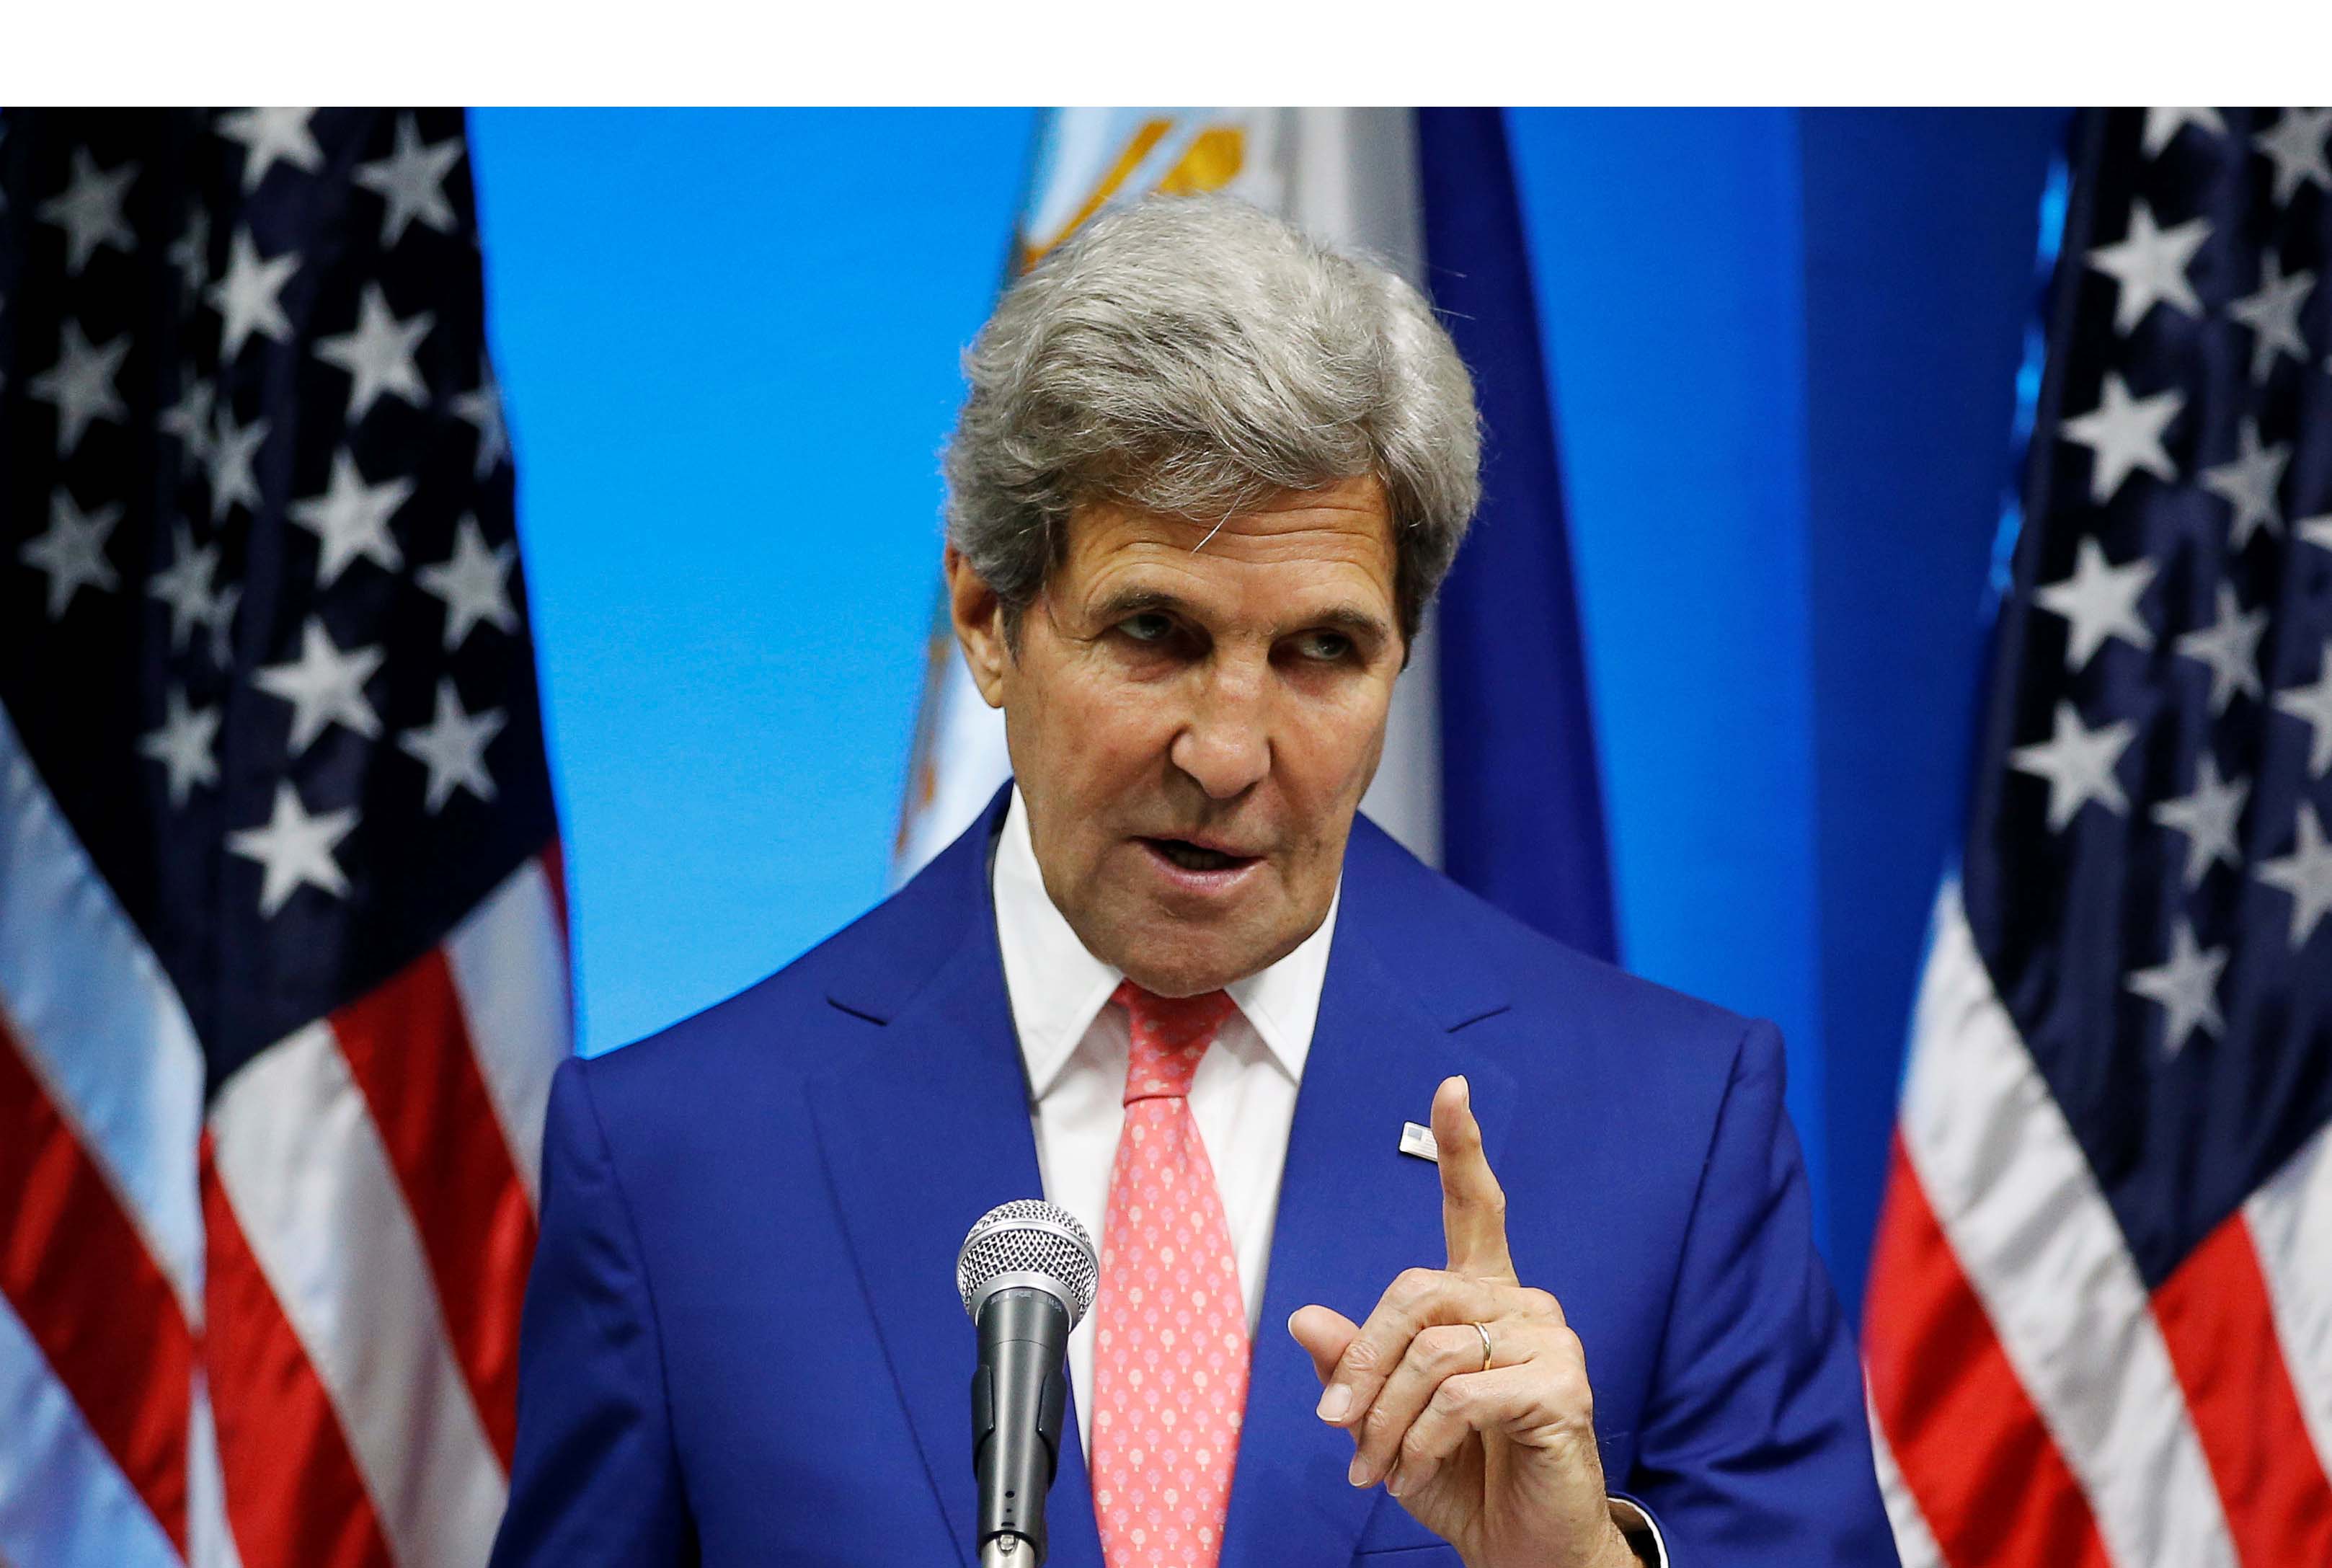 El Secretario de Estado, John Kerry, explicó que con el acuerdo de paz el grupo guerrillero debe cumplir con los requisitos establecidos